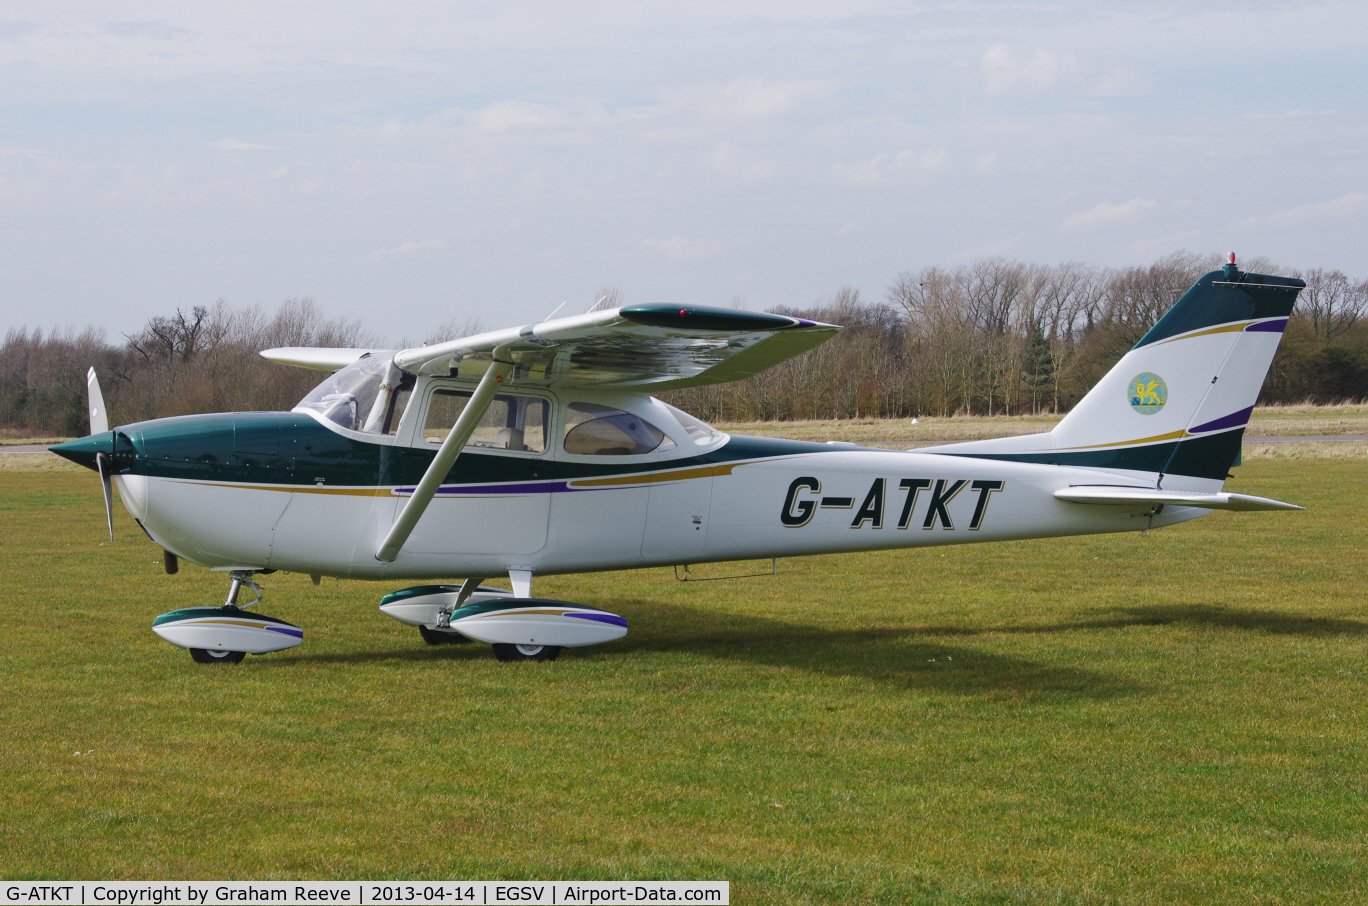 G-ATKT, 1965 Reims F172G Skyhawk C/N 0206, Parked at Old Buckenham.